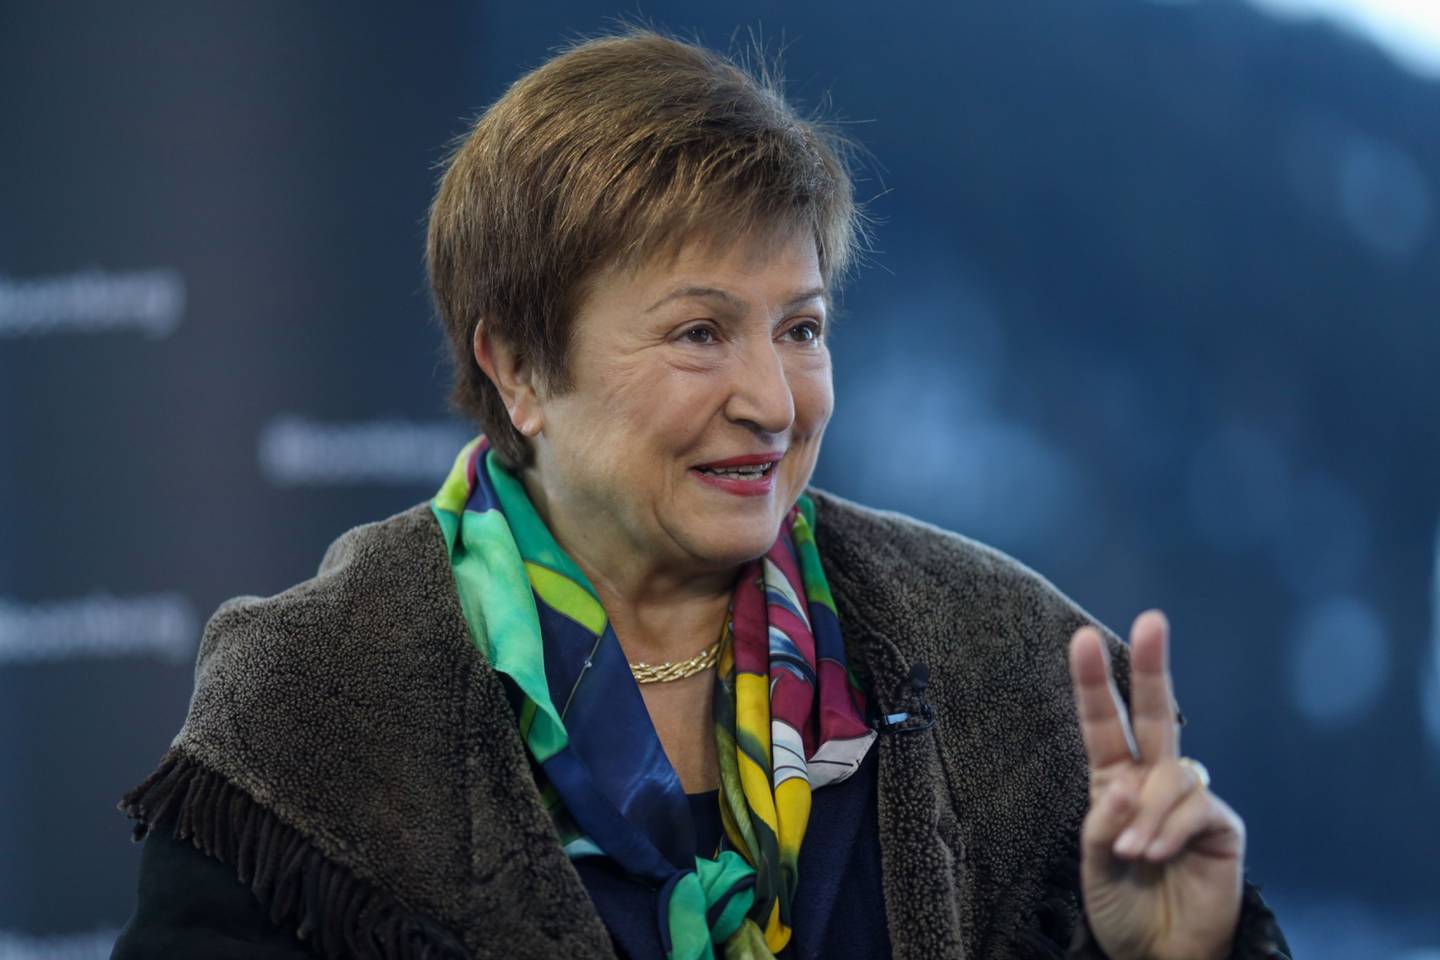 El destino de Georgieva ha estado en el limbo desde el 16 de septiembre, cuando un informe afirmó que ella presionó a sus subordinados para mejorar la posición de China en el influyente informe “Doing Business”.